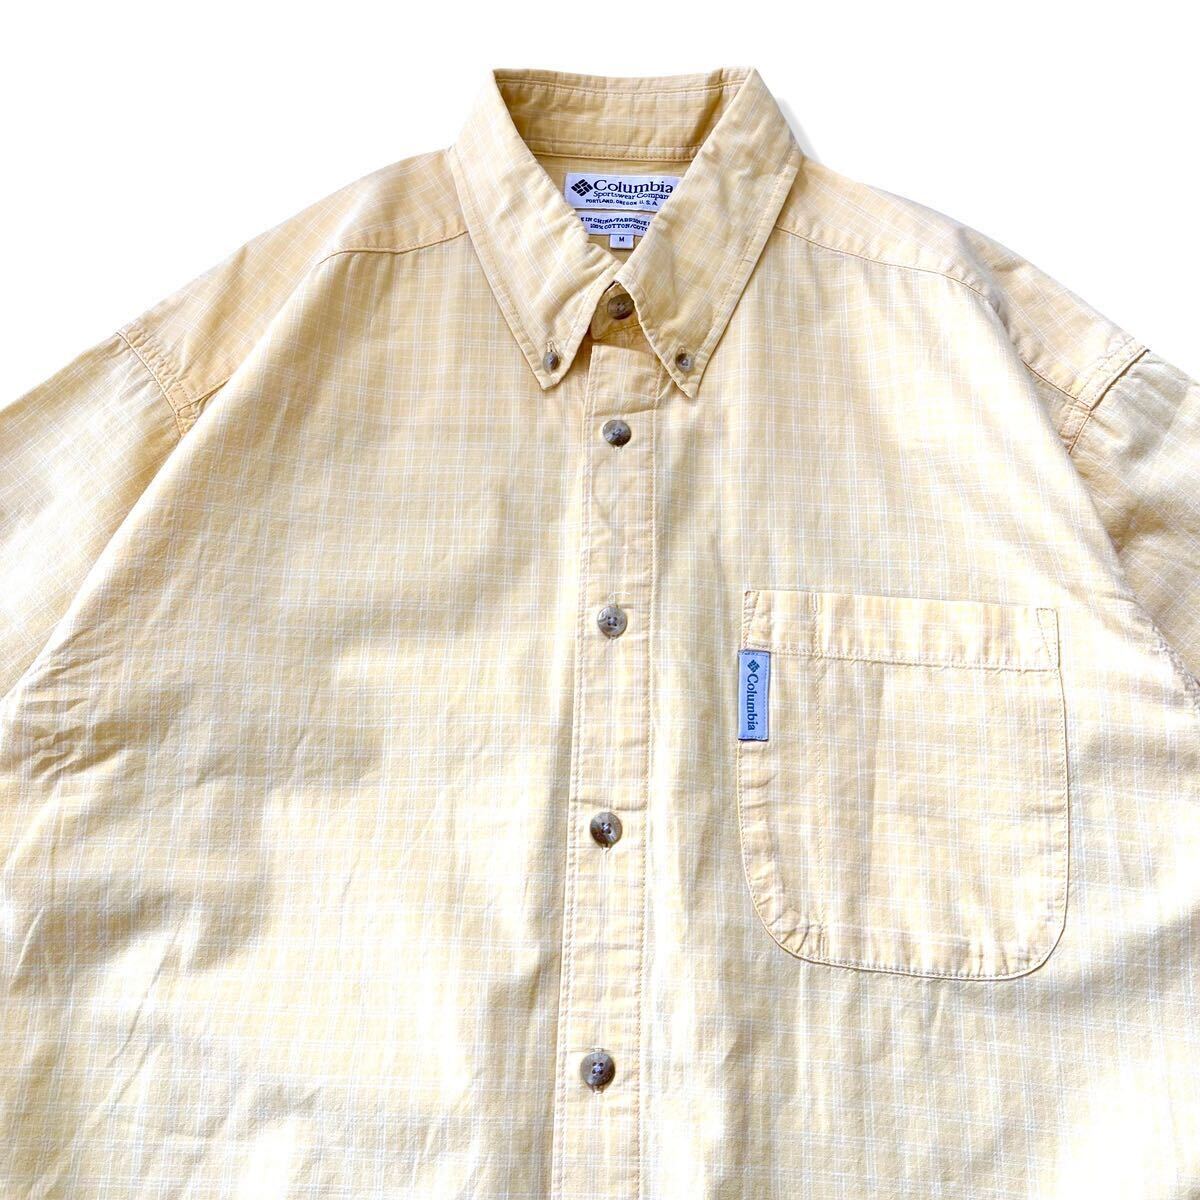 【90s】Columbia(コロンビア) チェック柄 半袖 ボタンダウンシャツ イエロー M コットン 90年代 ヴィンテージ BDシャツ アウトドア